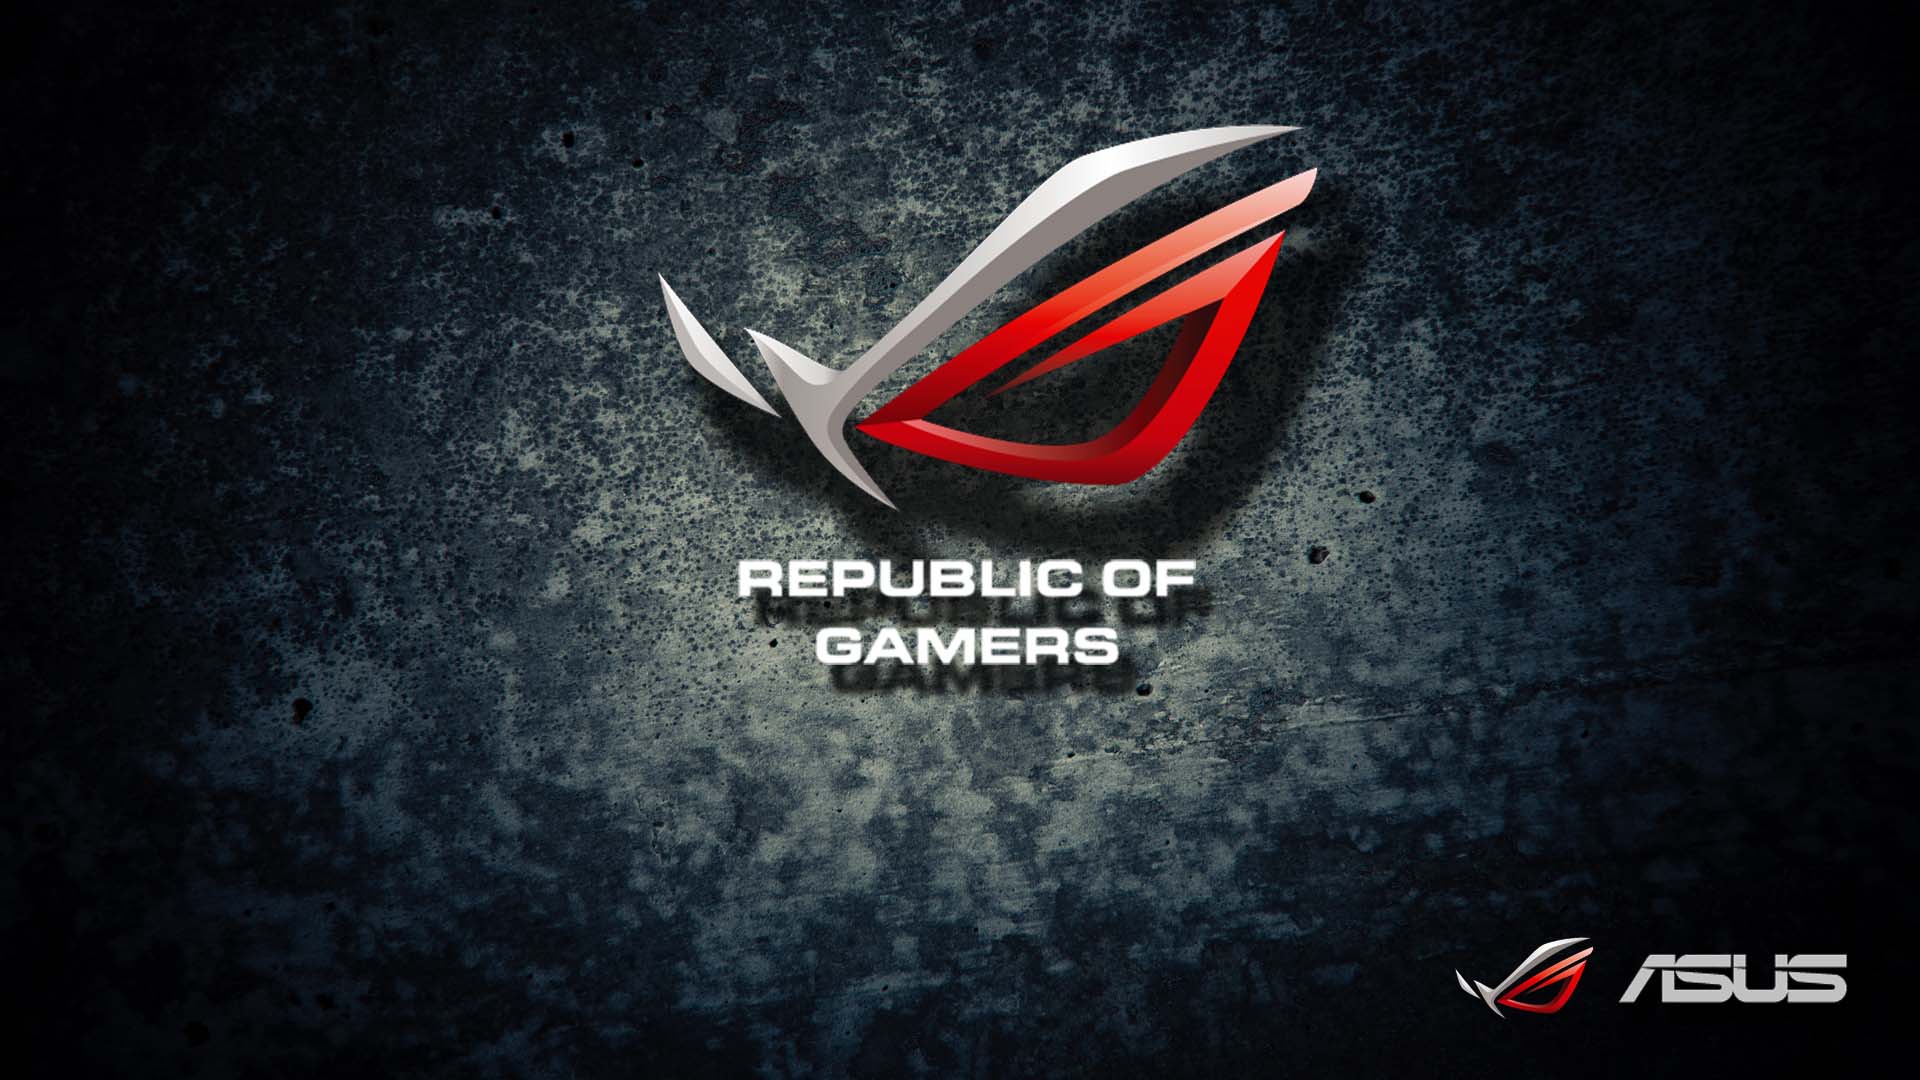 Asus Republic Of Gamers HD Wallpaper For Desktop Pc Gamer